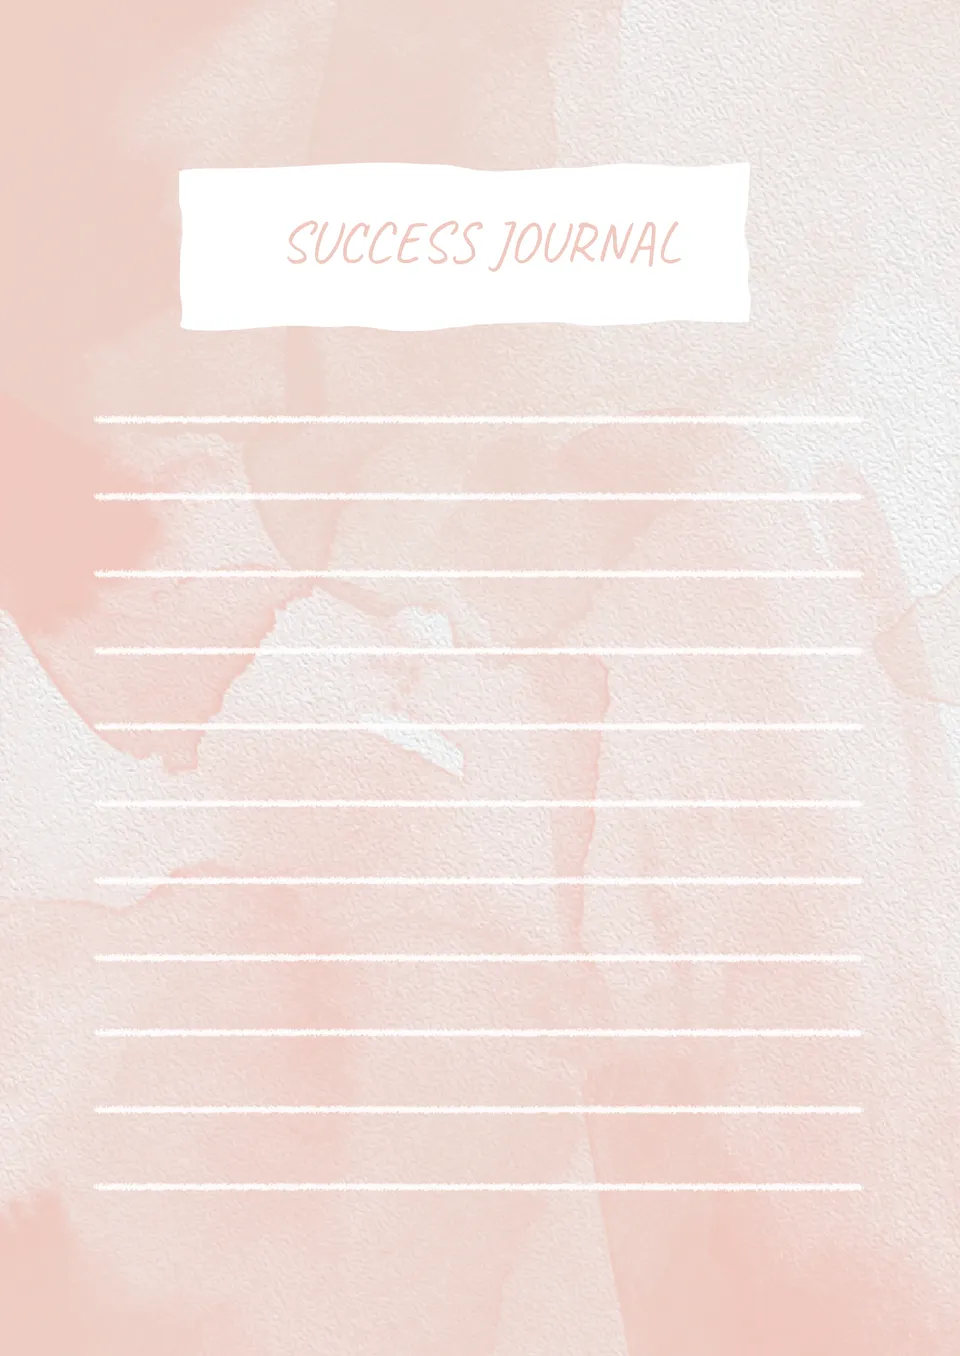 Success Journal Template